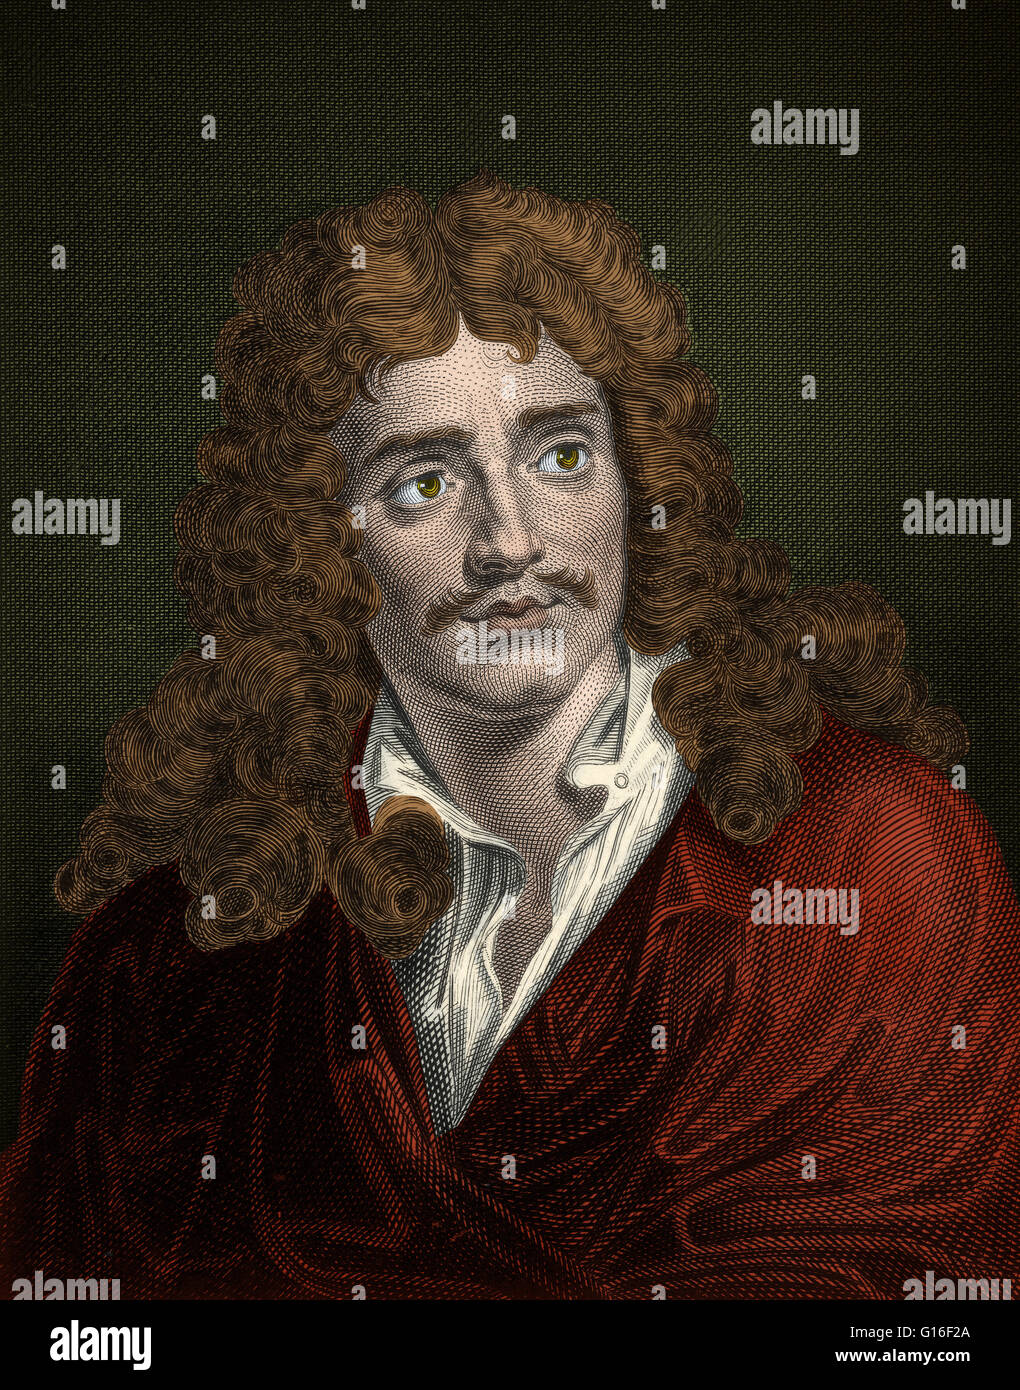 Jean-Baptiste Poquelin, connu sous le nom de Molière (janvier 15,1622 - Février 17,1673) était un acteur et dramaturge français qui est considéré comme l'un des plus grands maîtres de la comédie dans la littérature occidentale. Cette image a été améliorée couleur. Banque D'Images